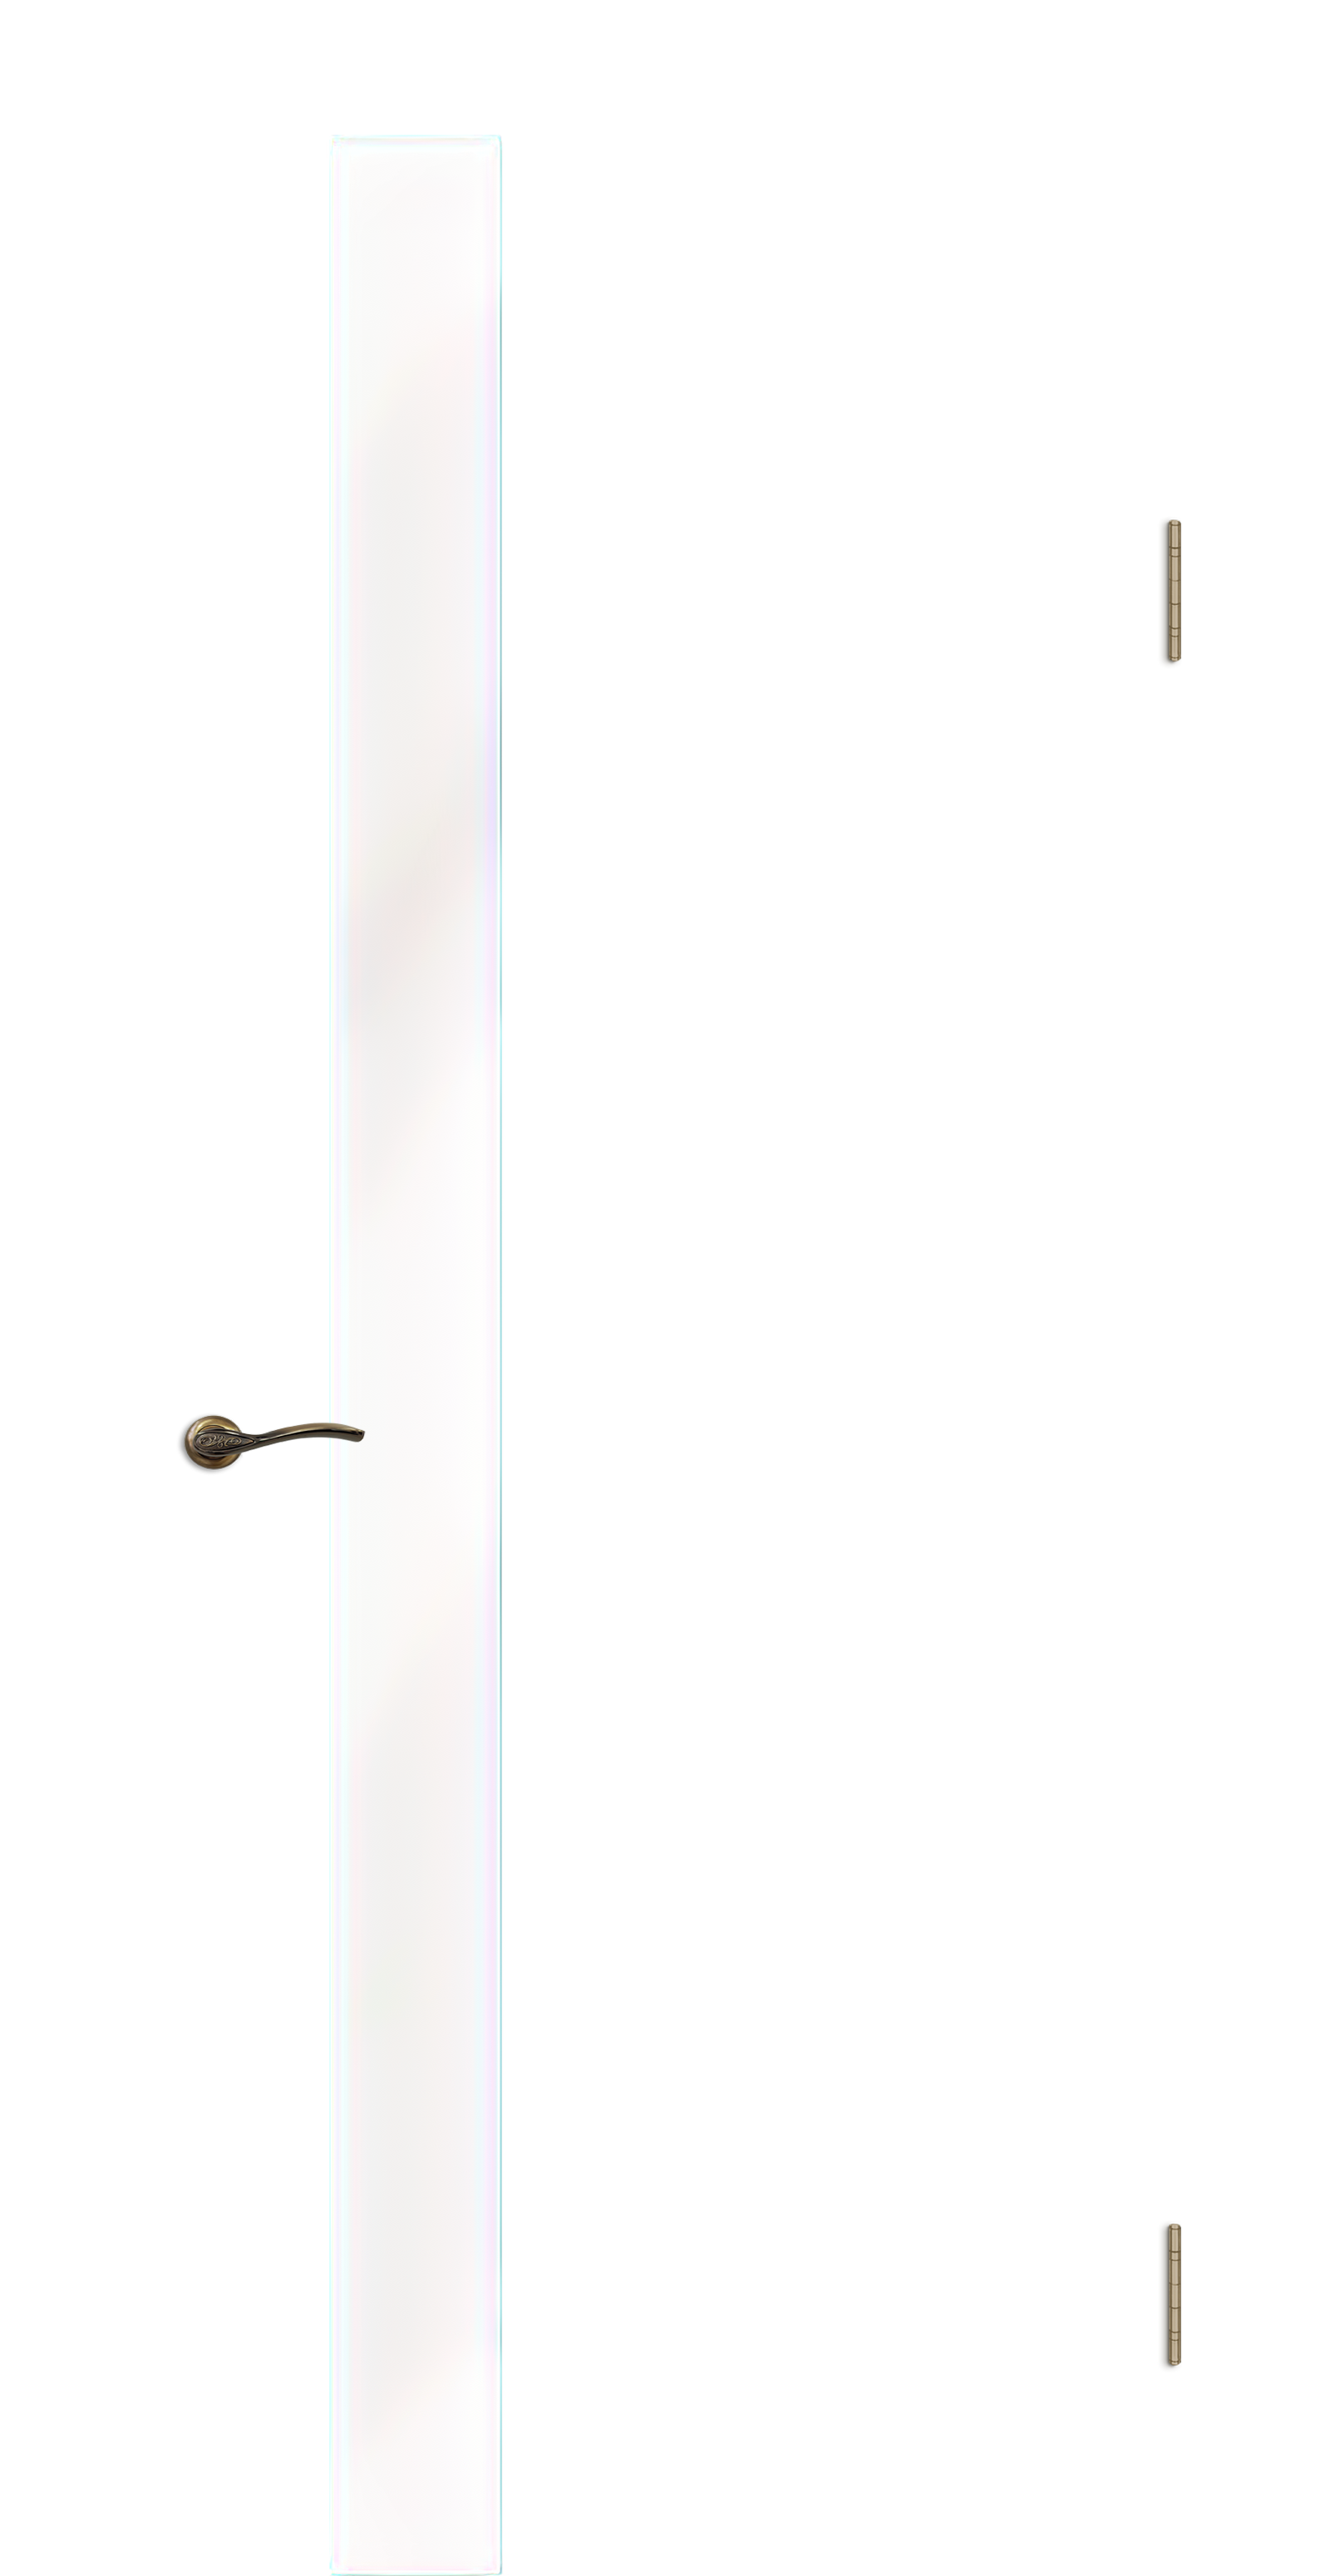 Межкомнатная дверь «Камелия К-5». Вид отделки Тон 10 Остекление: Водопад Cтандартный наличник